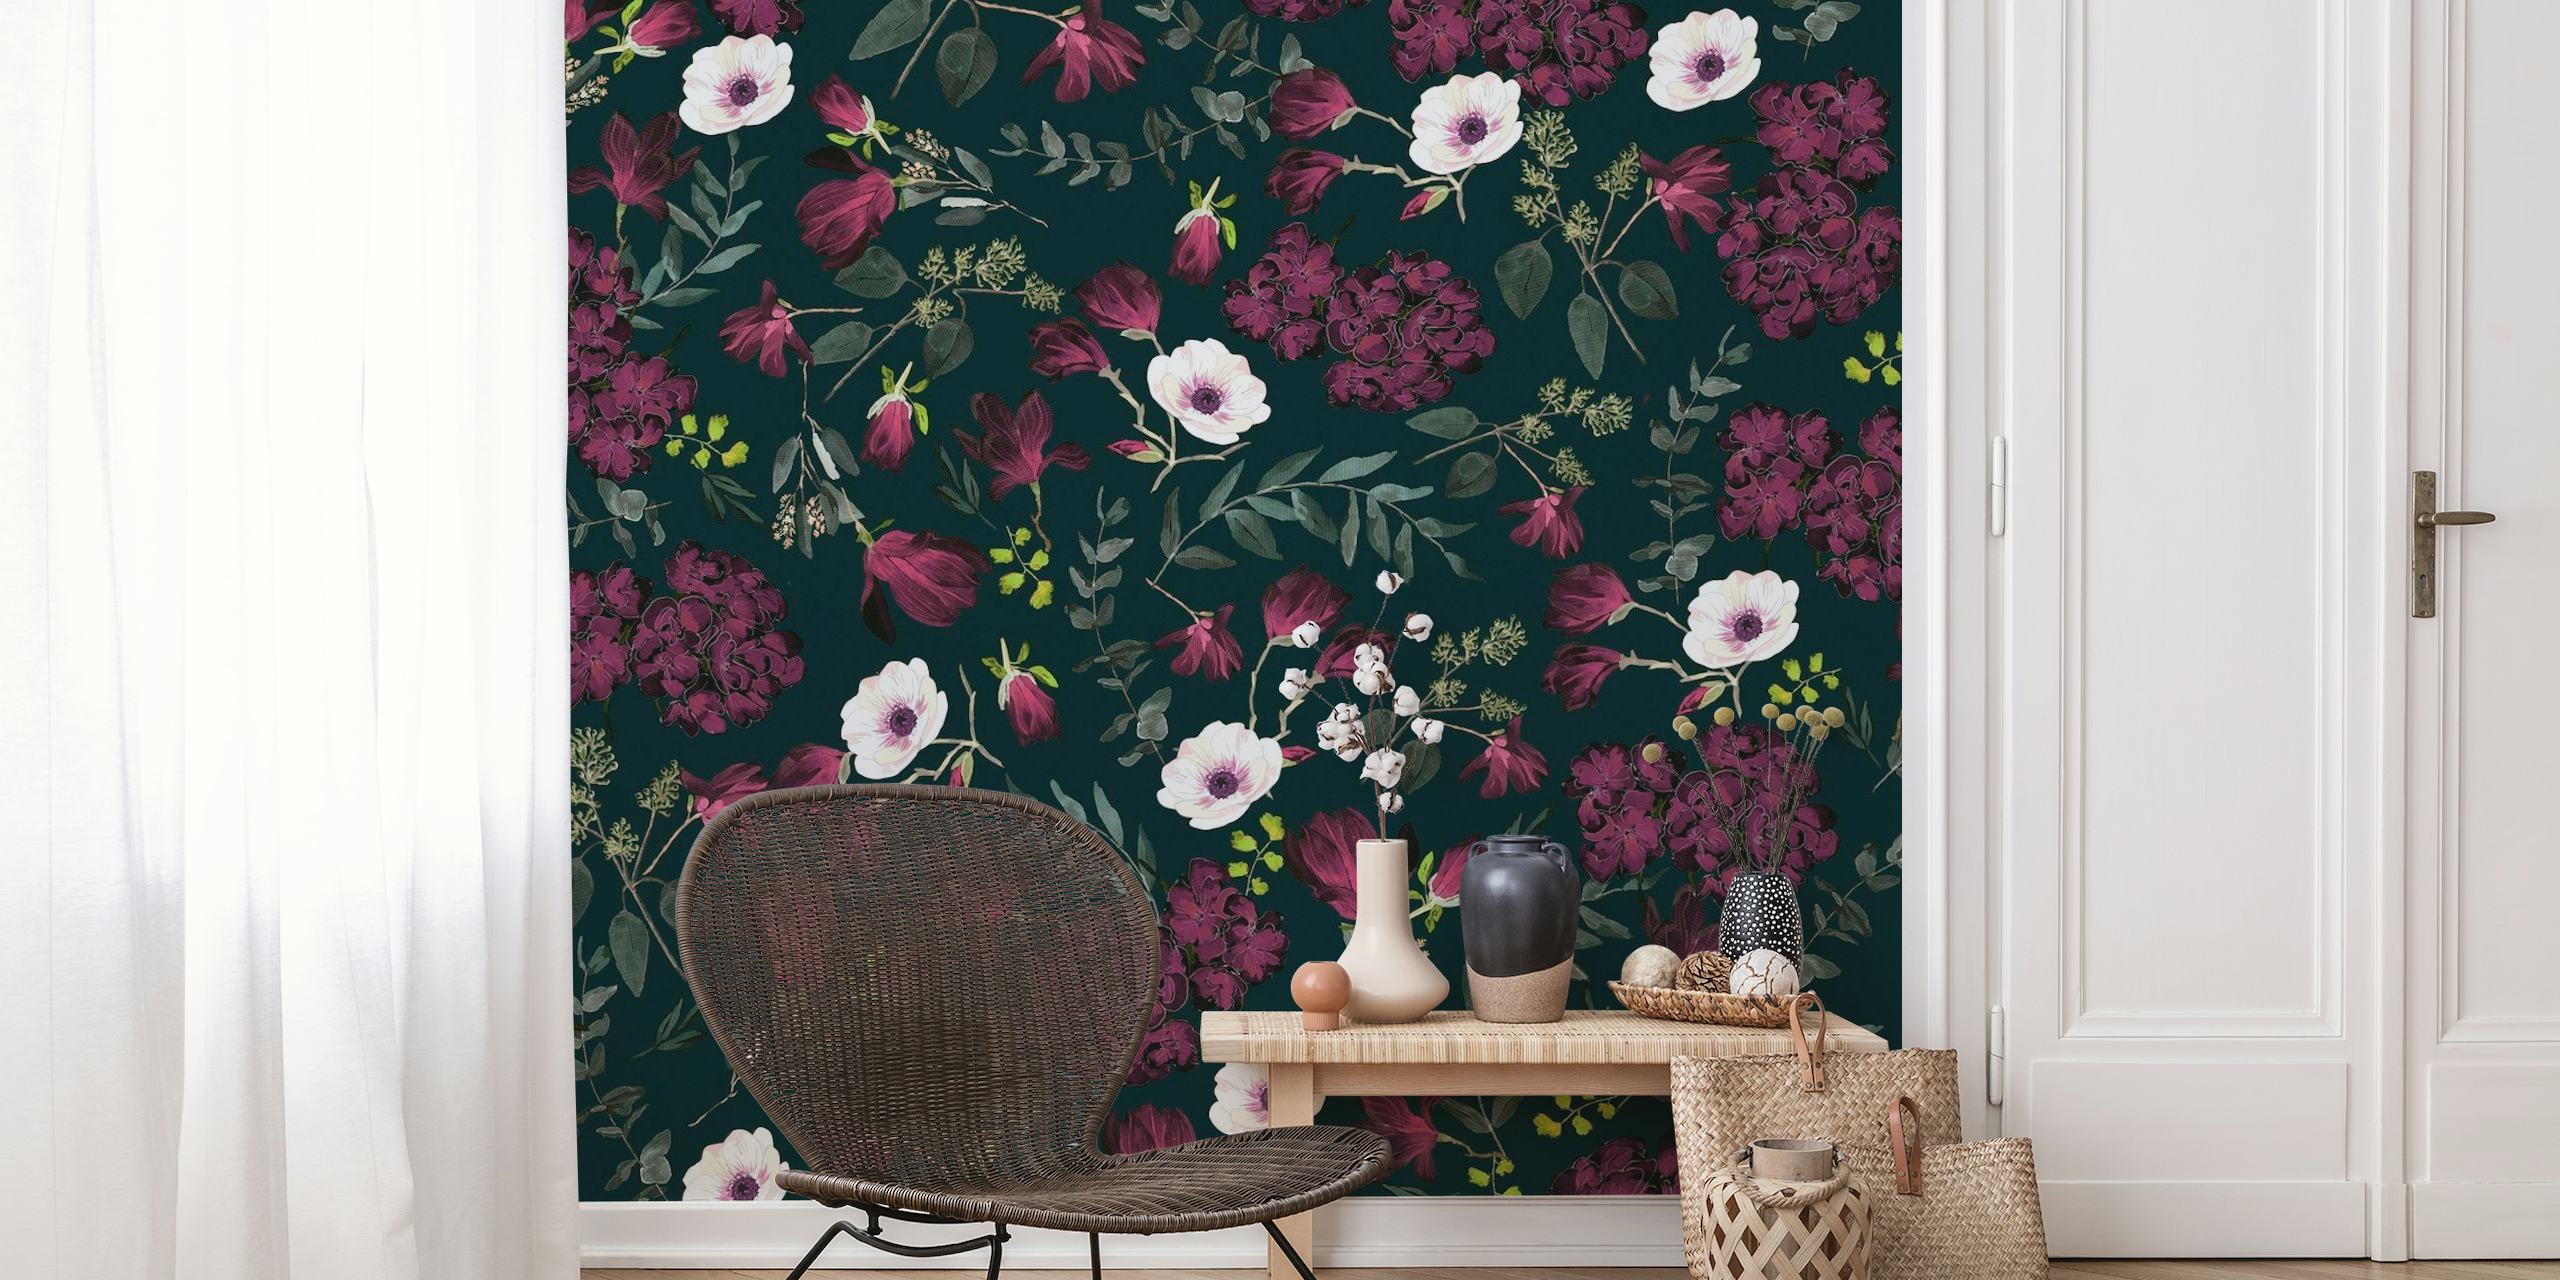 Dunkles, romantisches Blumenmuster mit burgunderroten und fuchsiafarbenen Blumen, ideal für anspruchsvolle Wanddekoration.